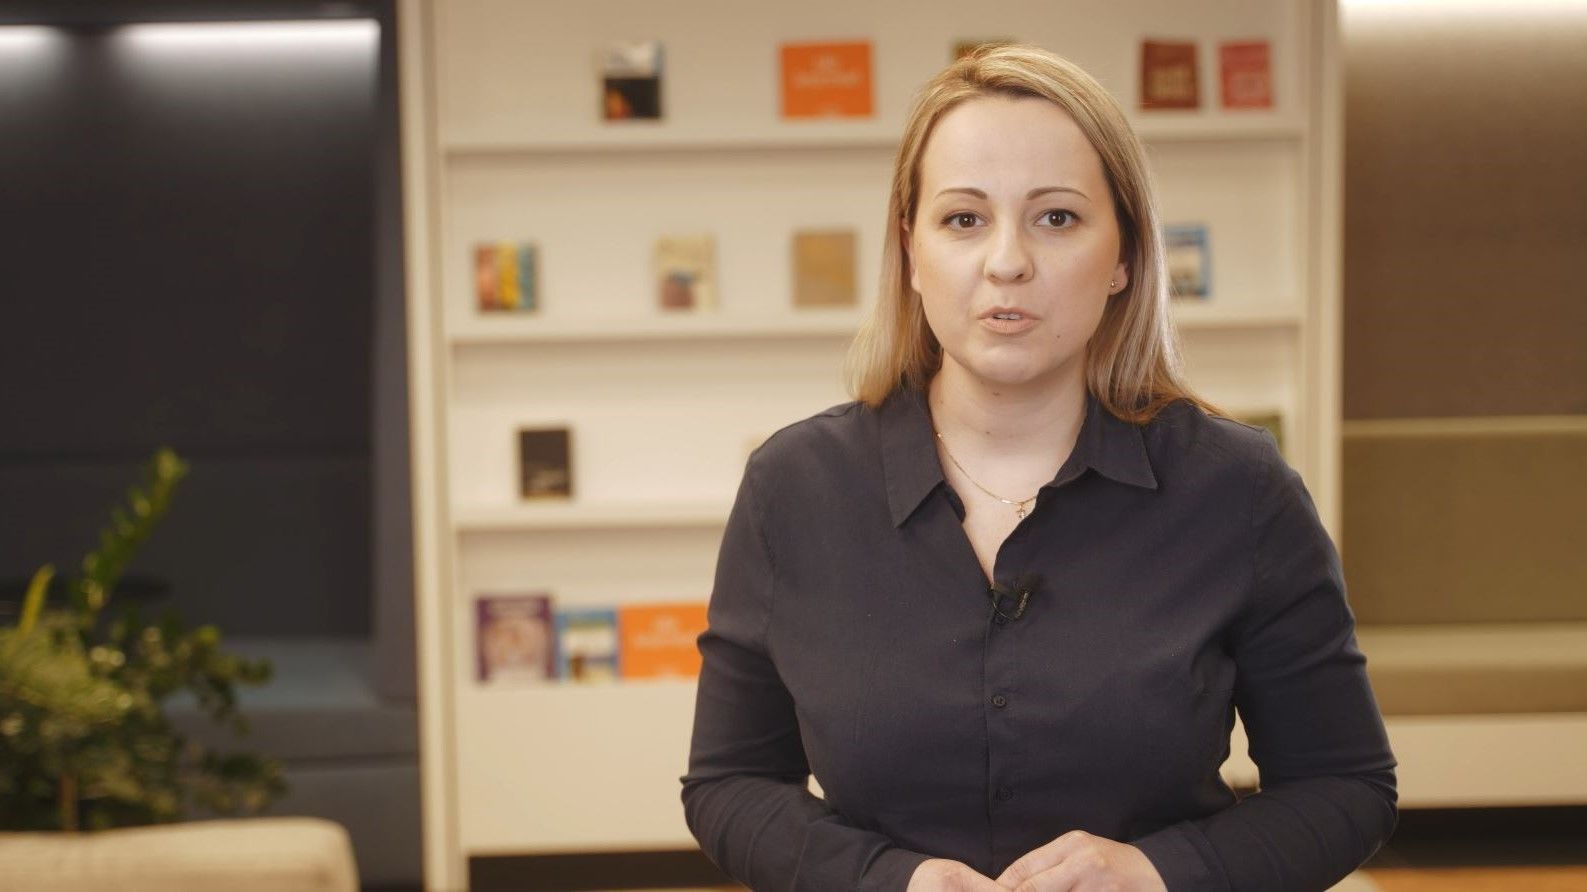 Screen ekranu wideo, w którym kobieta stoi przed kamerą, w tle regał z książkami